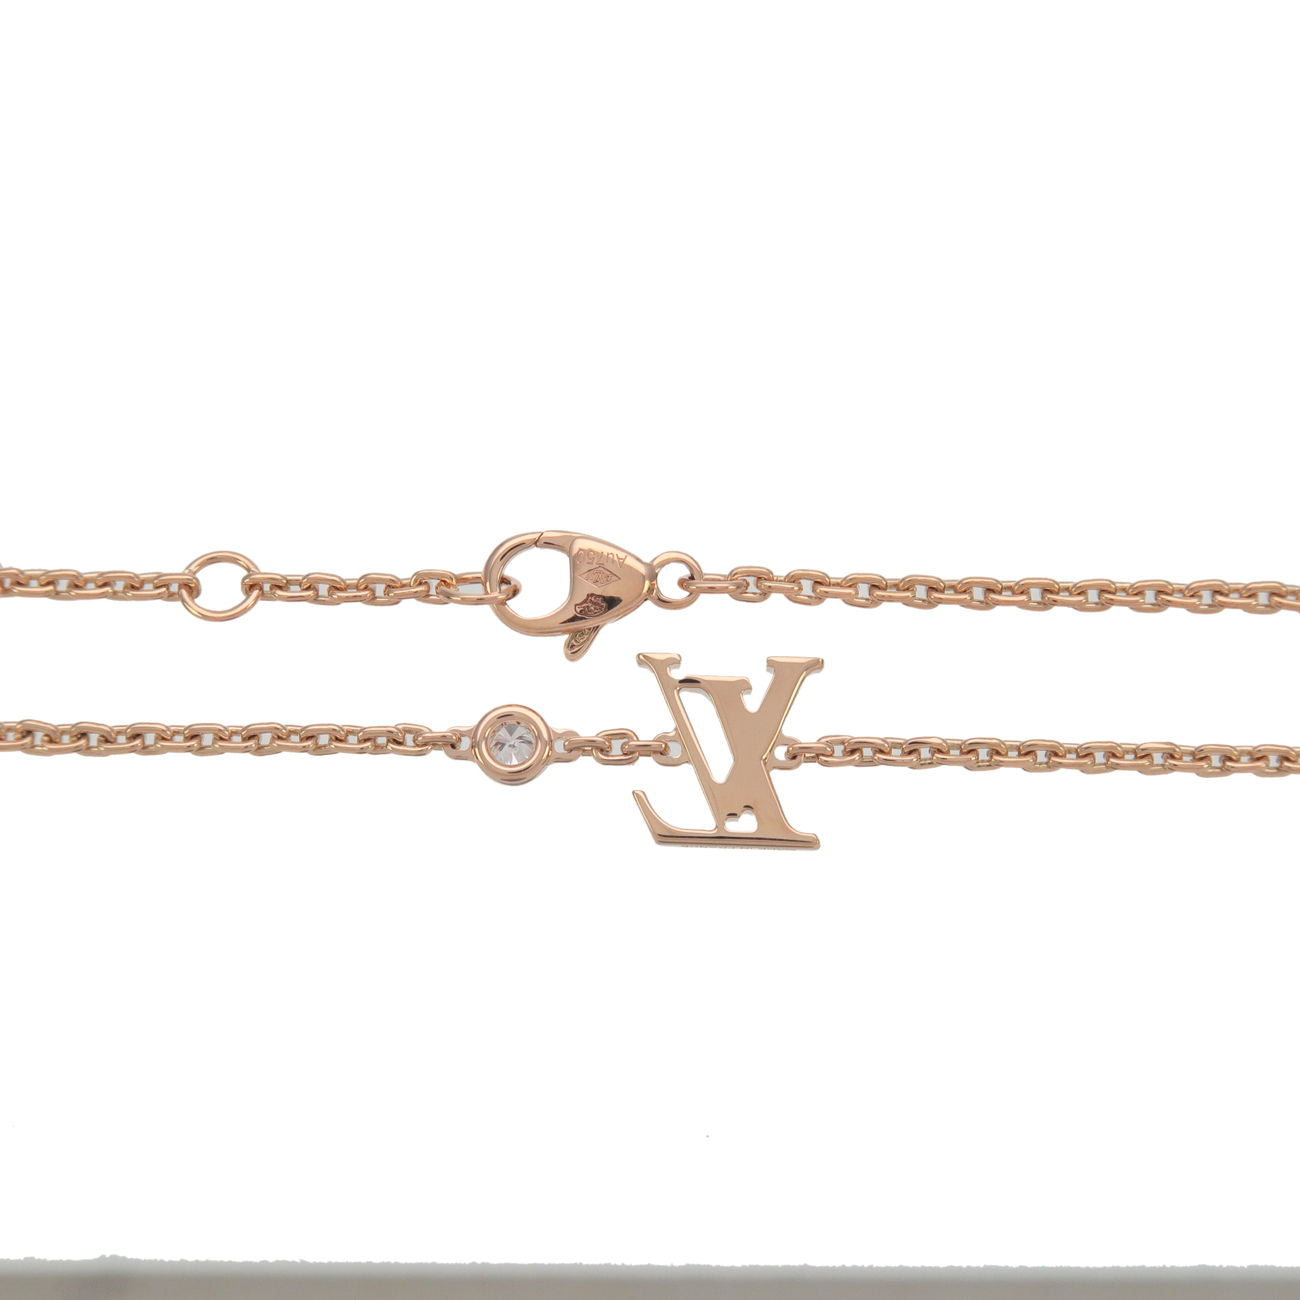 Louis Vuitton bracelet Bag and box included #louis... - Depop